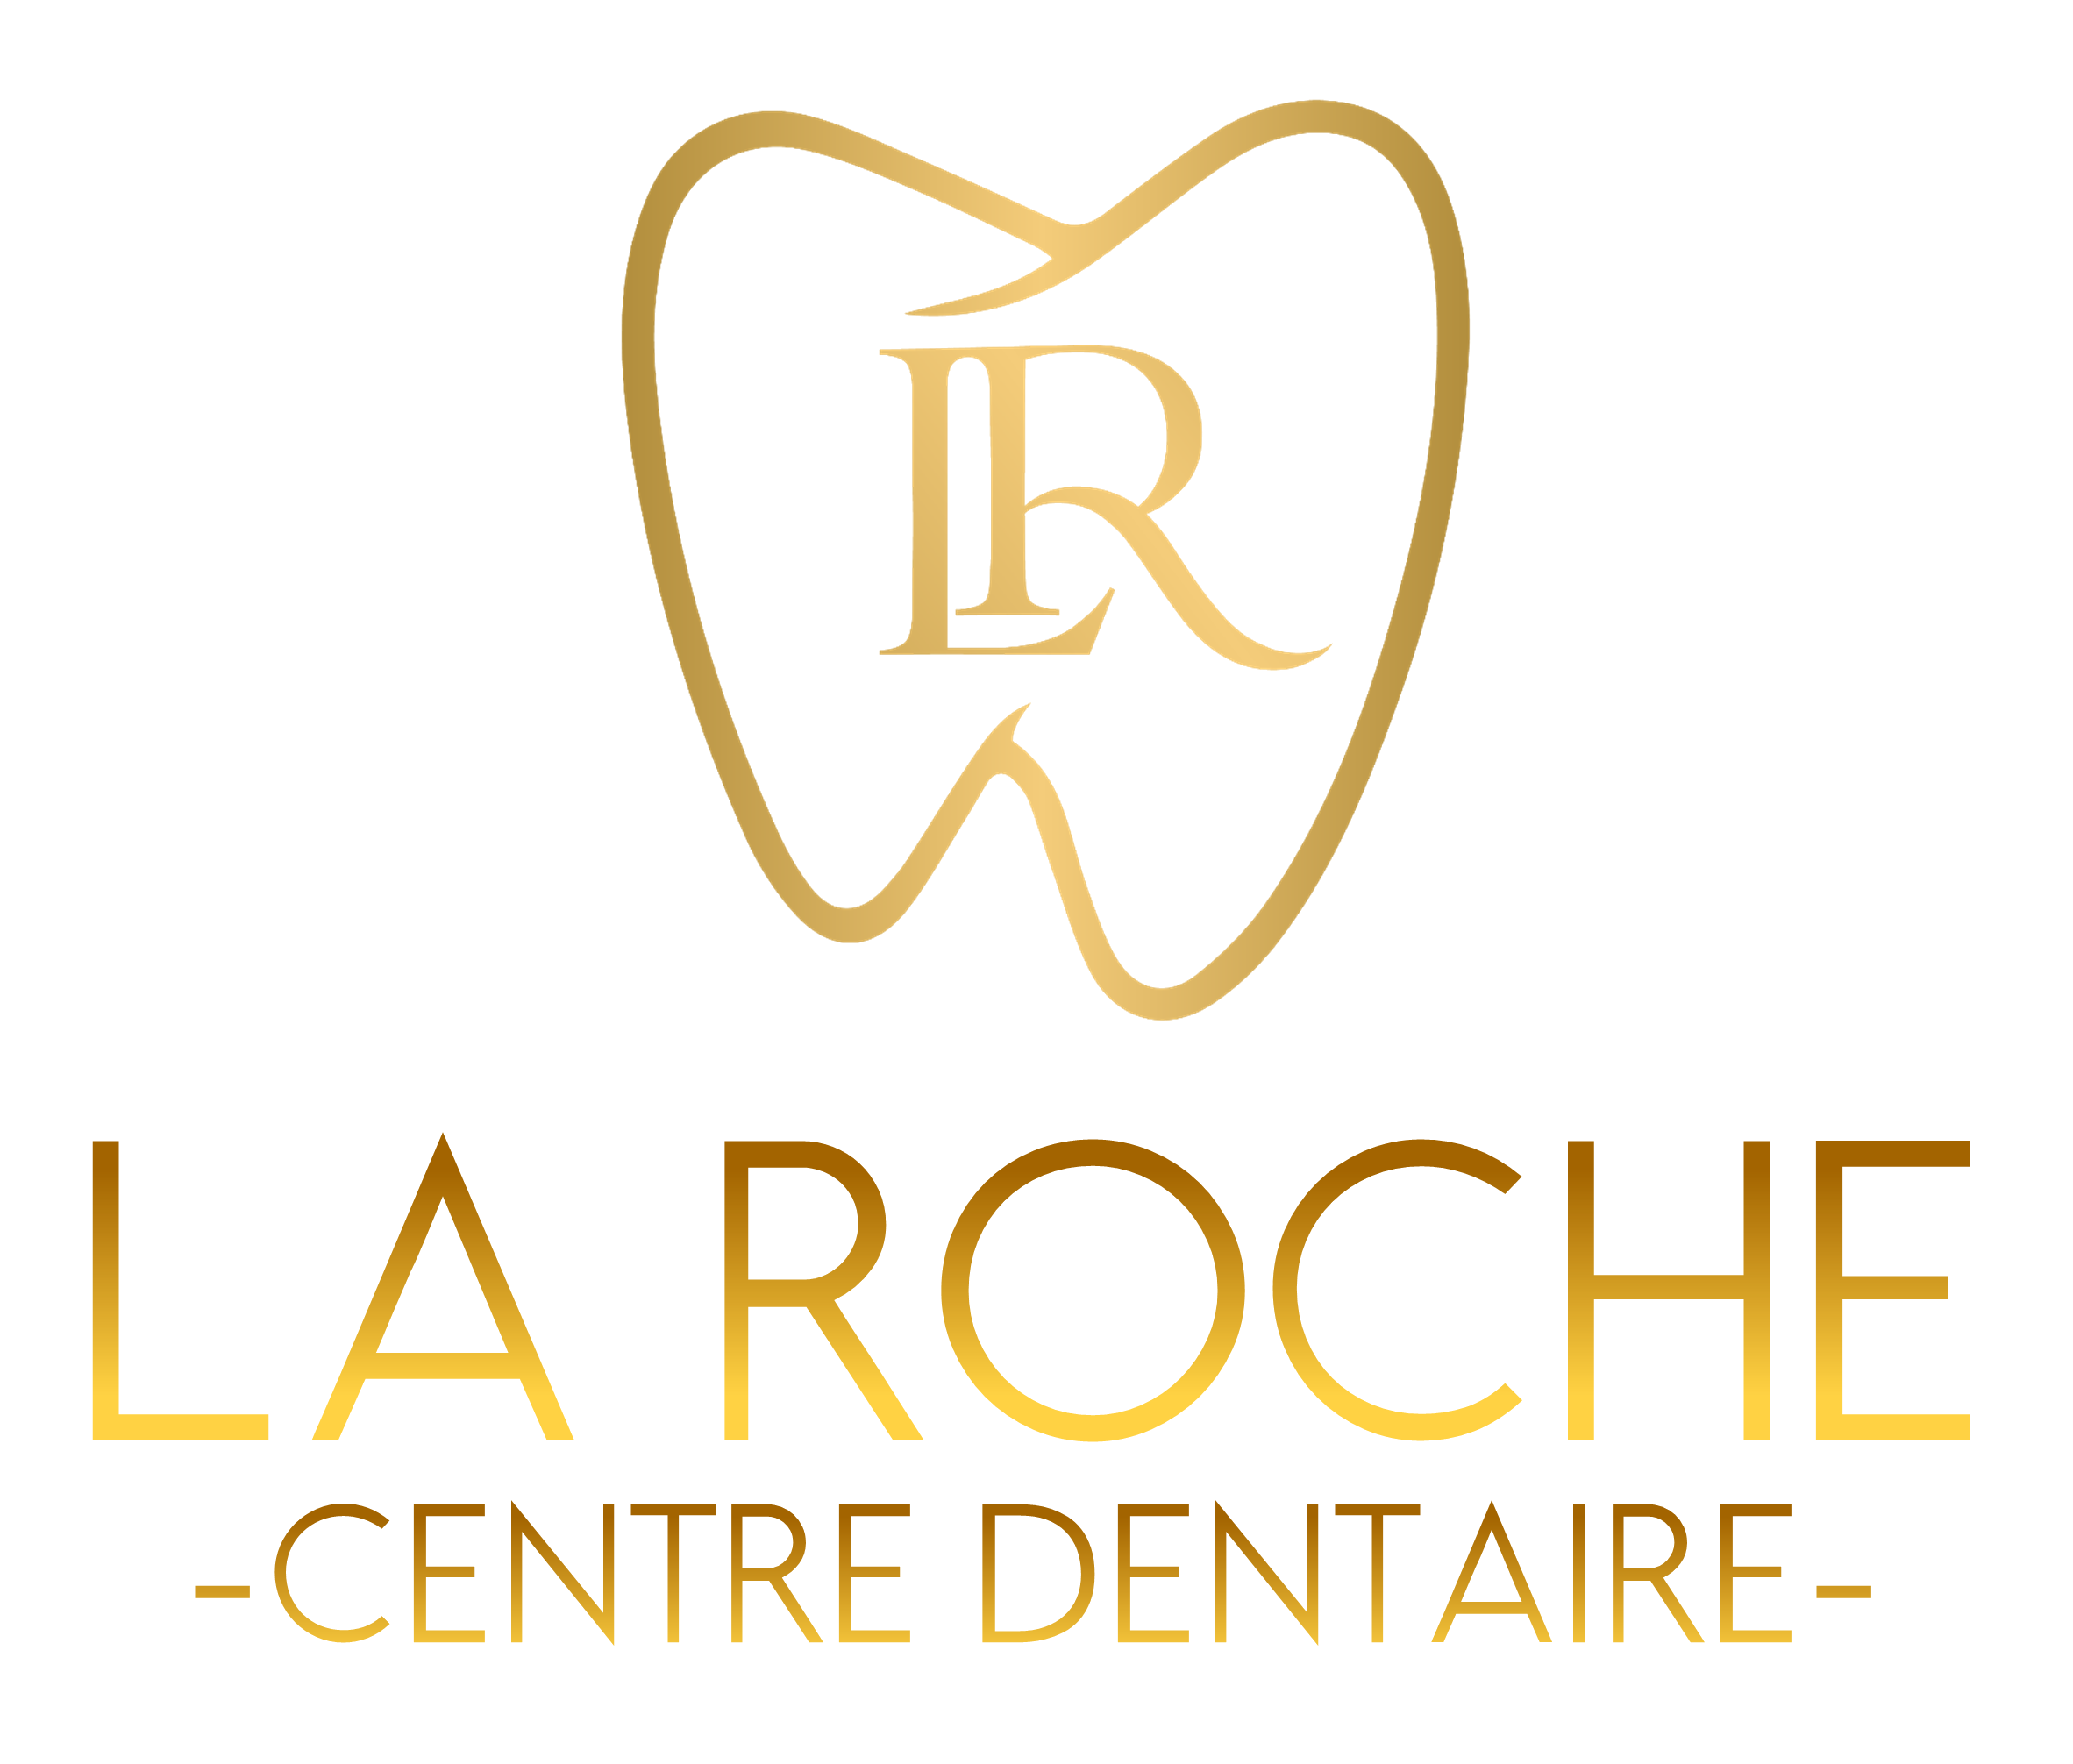 Centre Dentaire La Roche